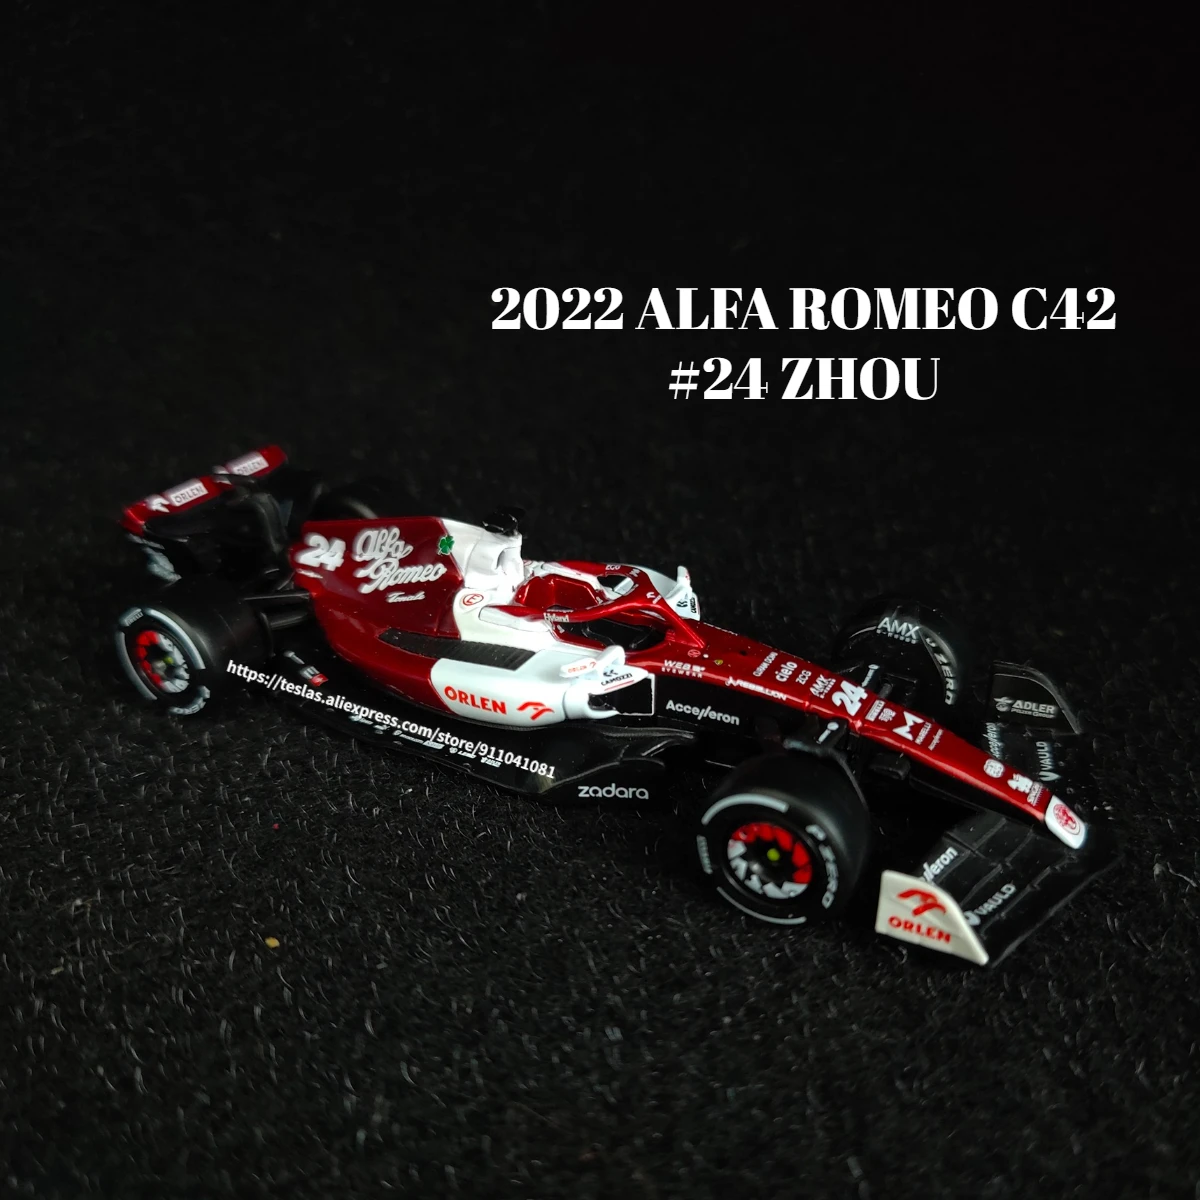 

Bburago F1 2022 Car Model Alfa Romeo C42 Zhou Bottas Ferrari Mercedes Mclaren Red Bull Racing Formula 1 Diecast Toy Collection